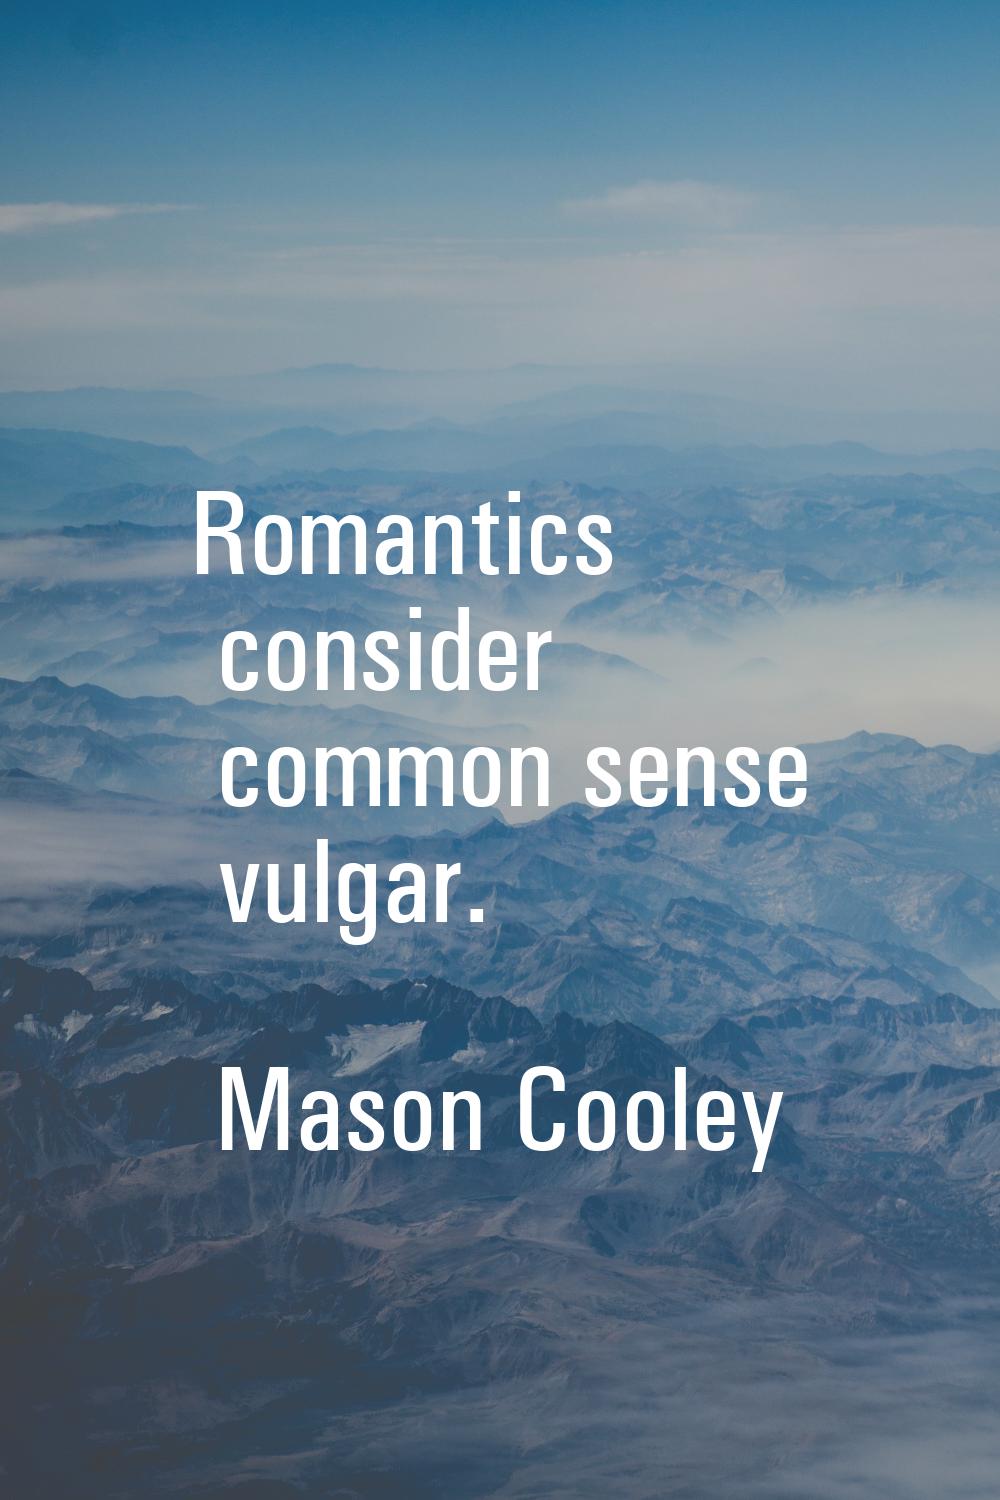 Romantics consider common sense vulgar.